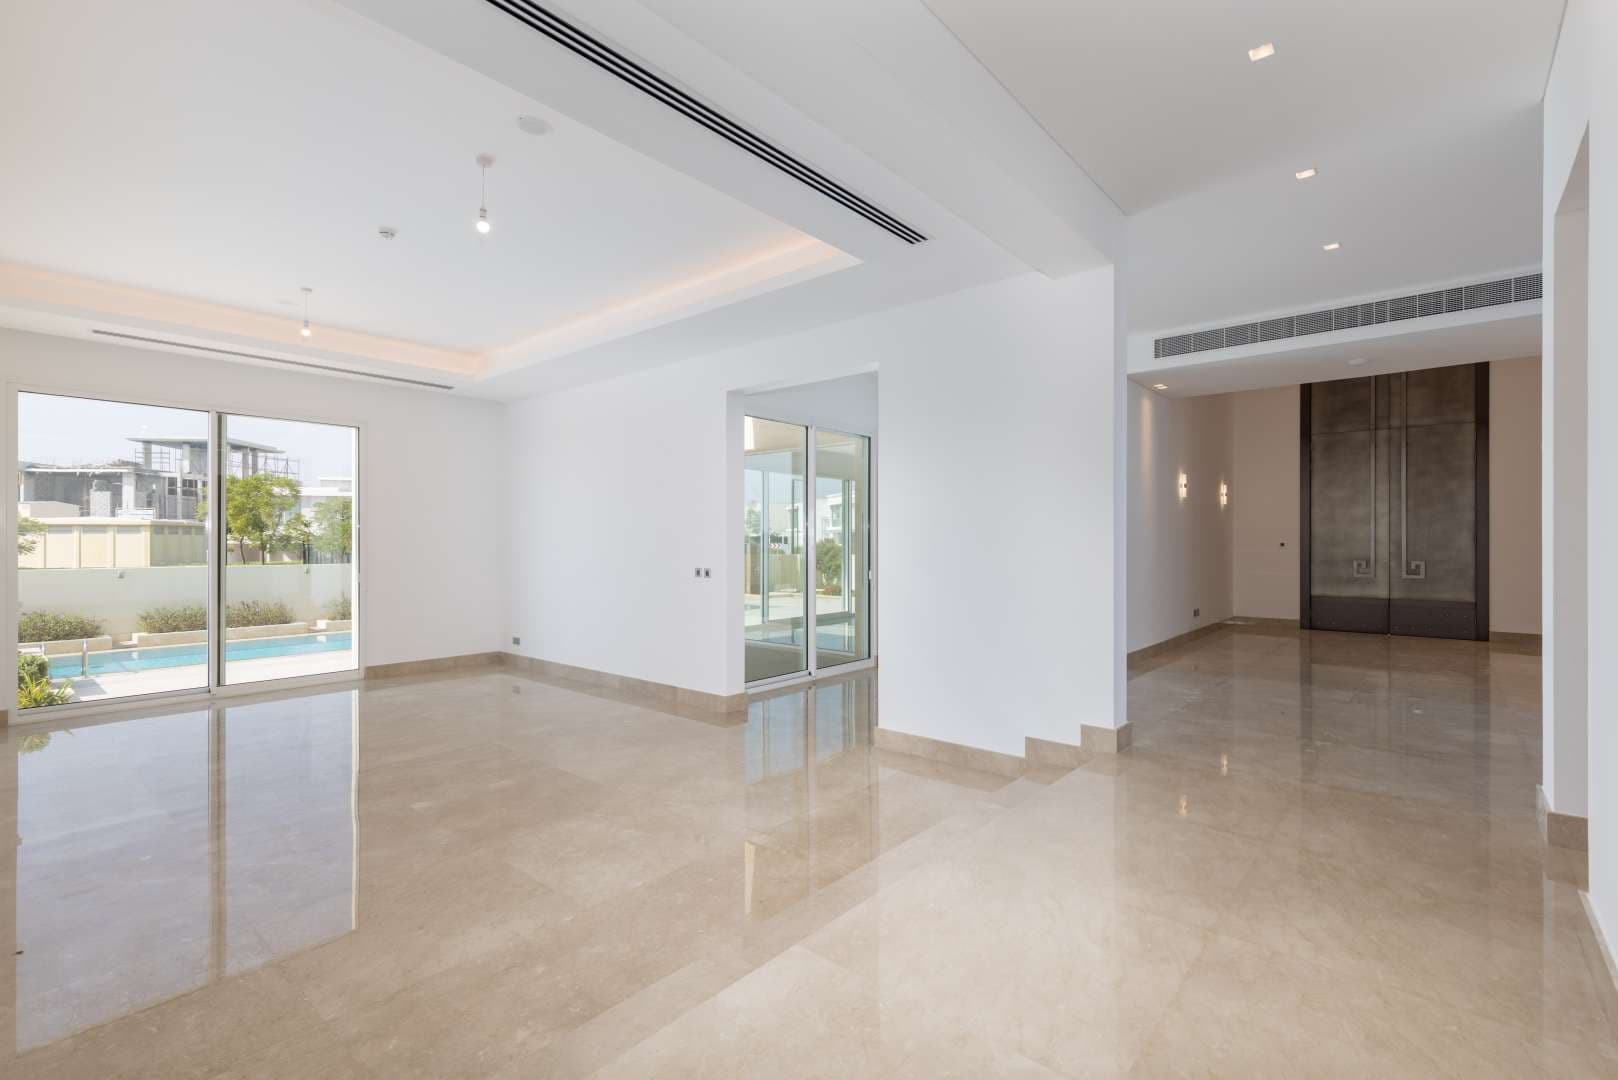 5 Bedroom Villa For Sale Dubai Hills Vista Lp09276 17fda16cd5c11400.jpg